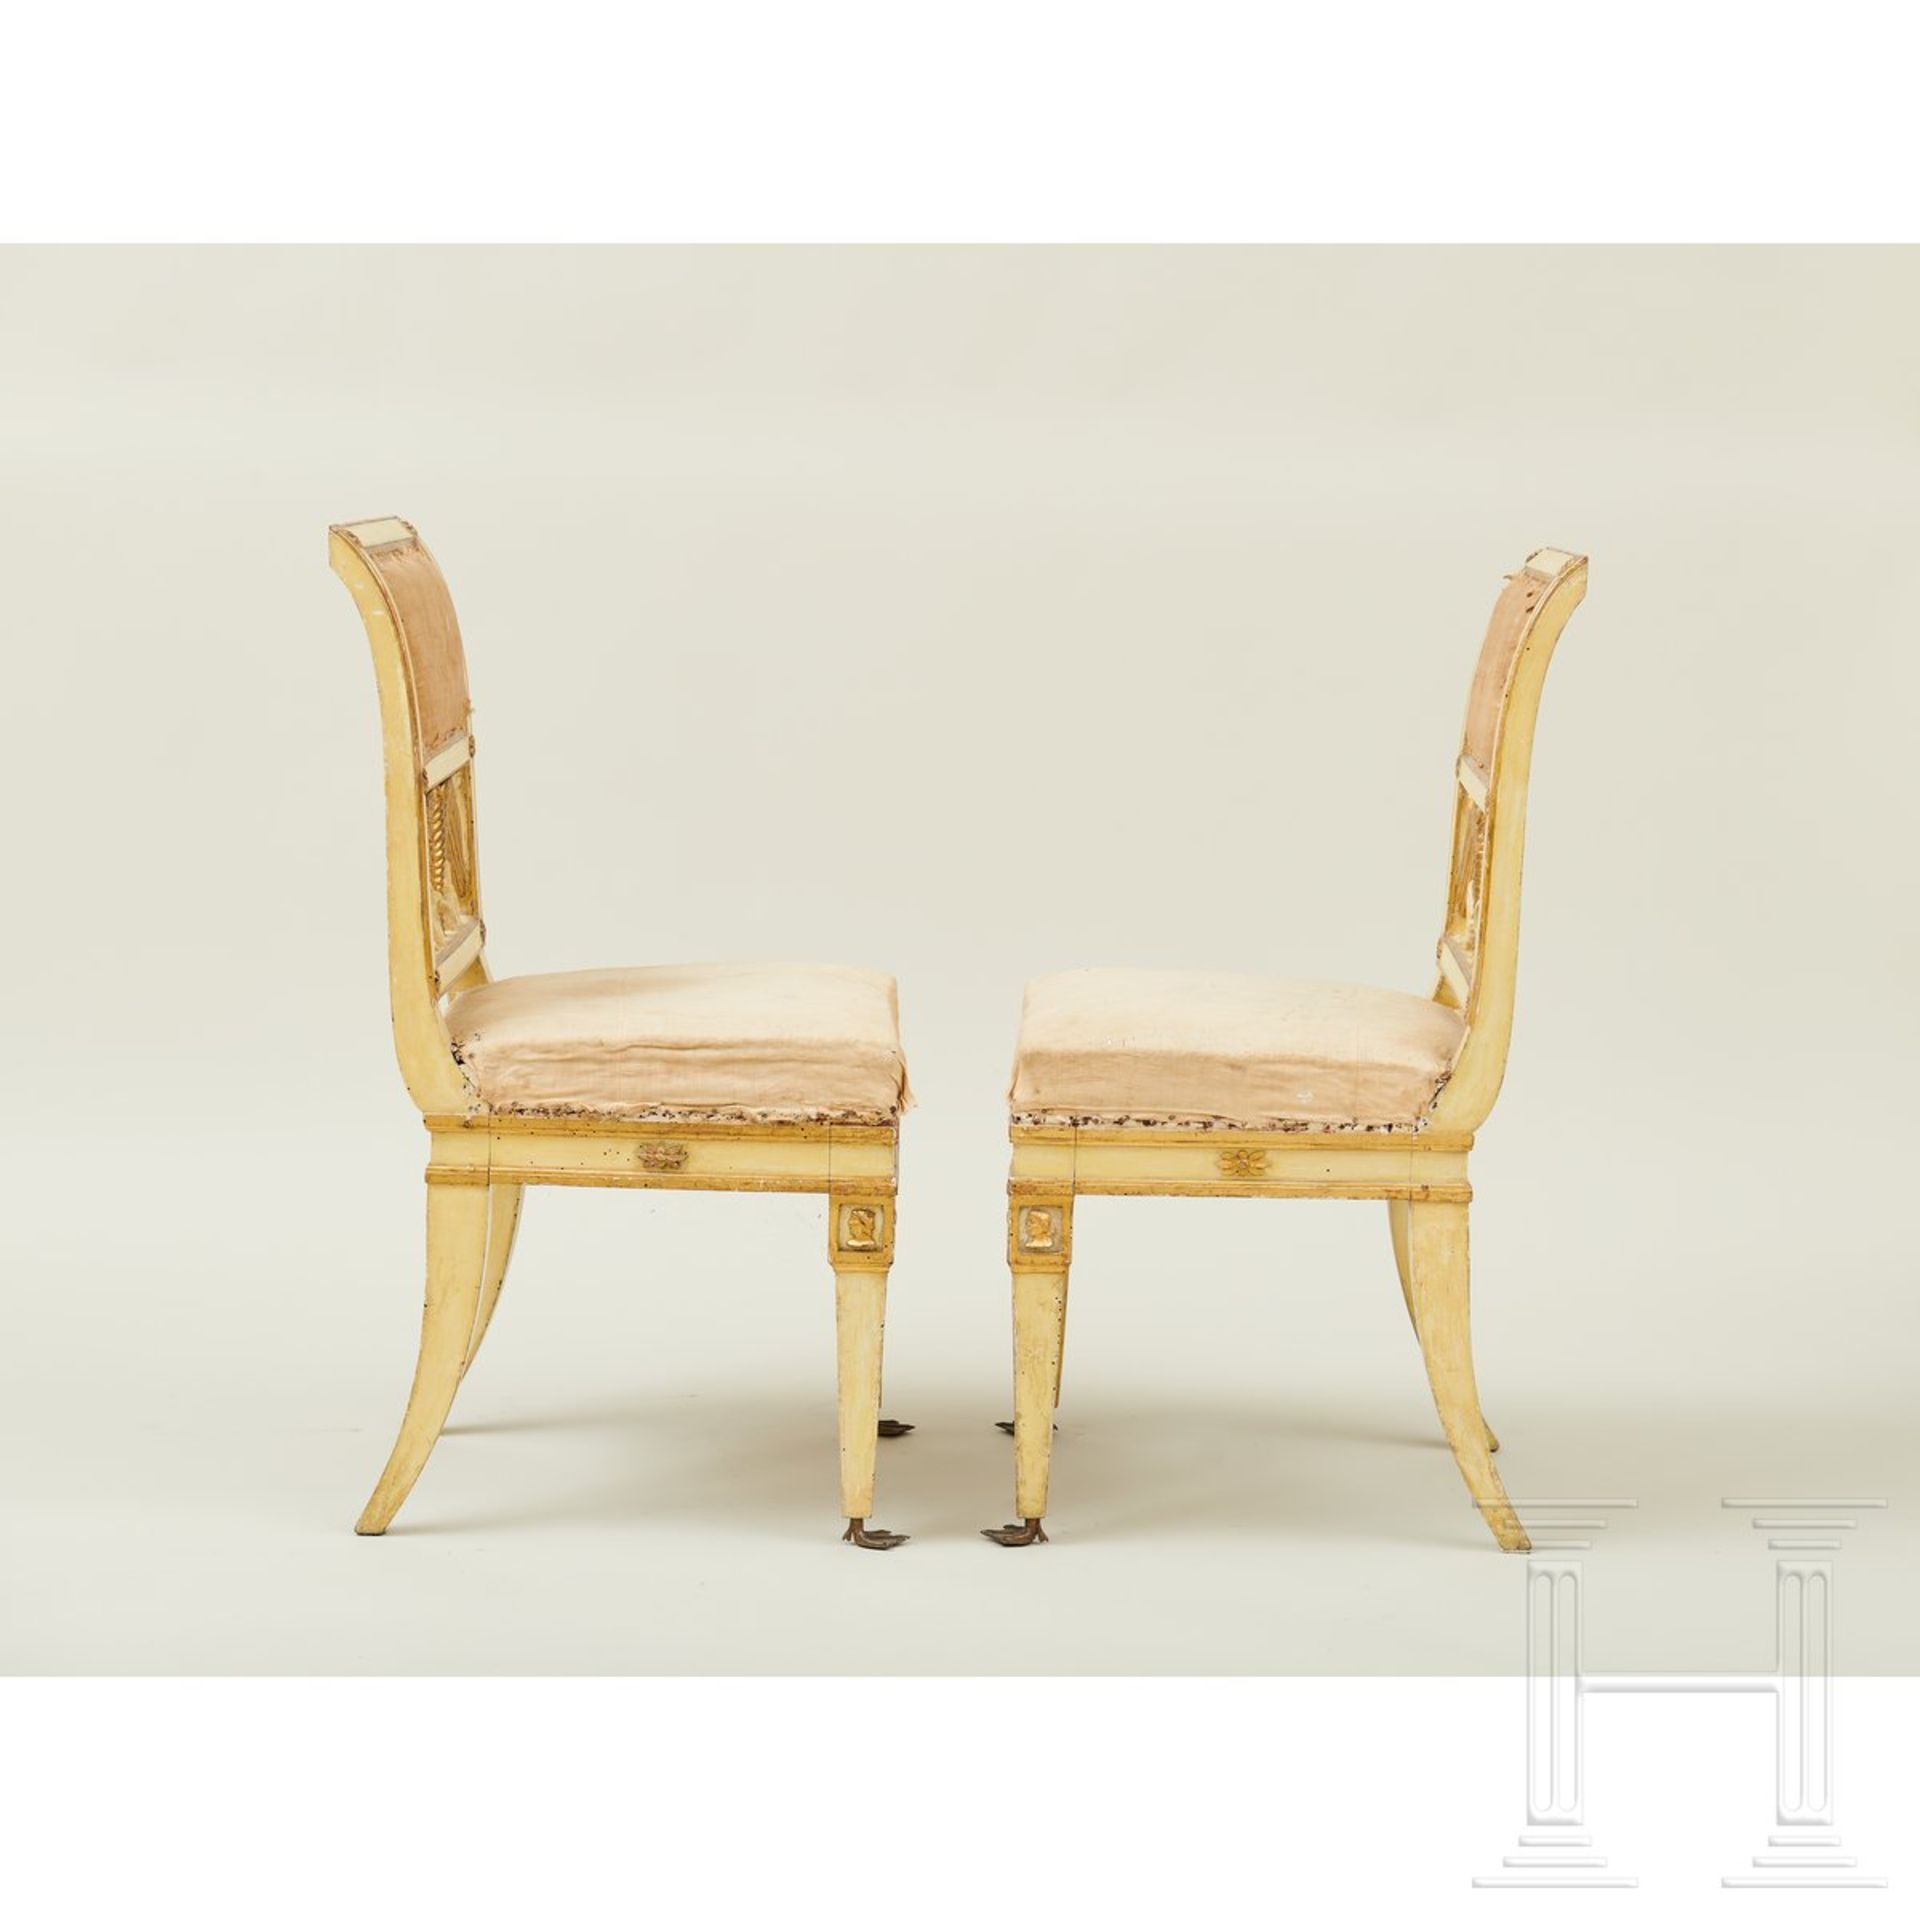 Ein Paar klassizistische Stühle, Lucca, um 1800 - Image 9 of 16